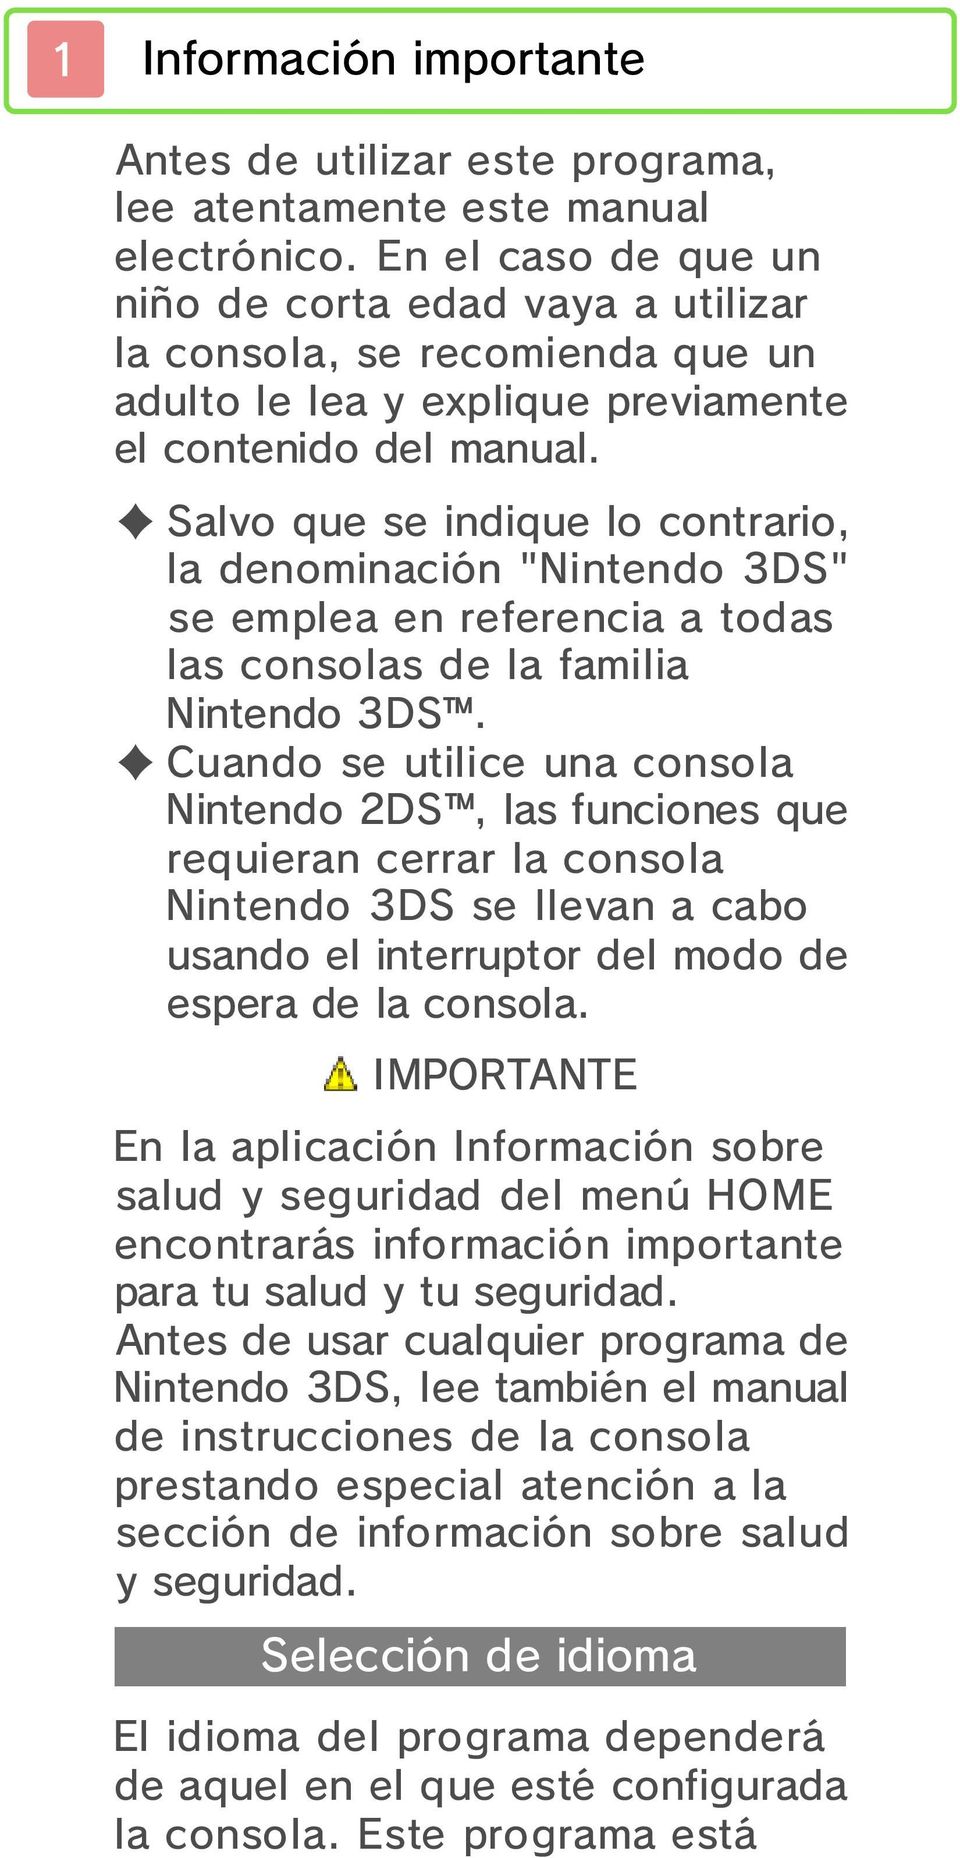 Salvo que se indique lo contrario, la nominación "Nintendo 3DS" se emplea en referencia a todas las consolas la familia Nintendo 3DS.